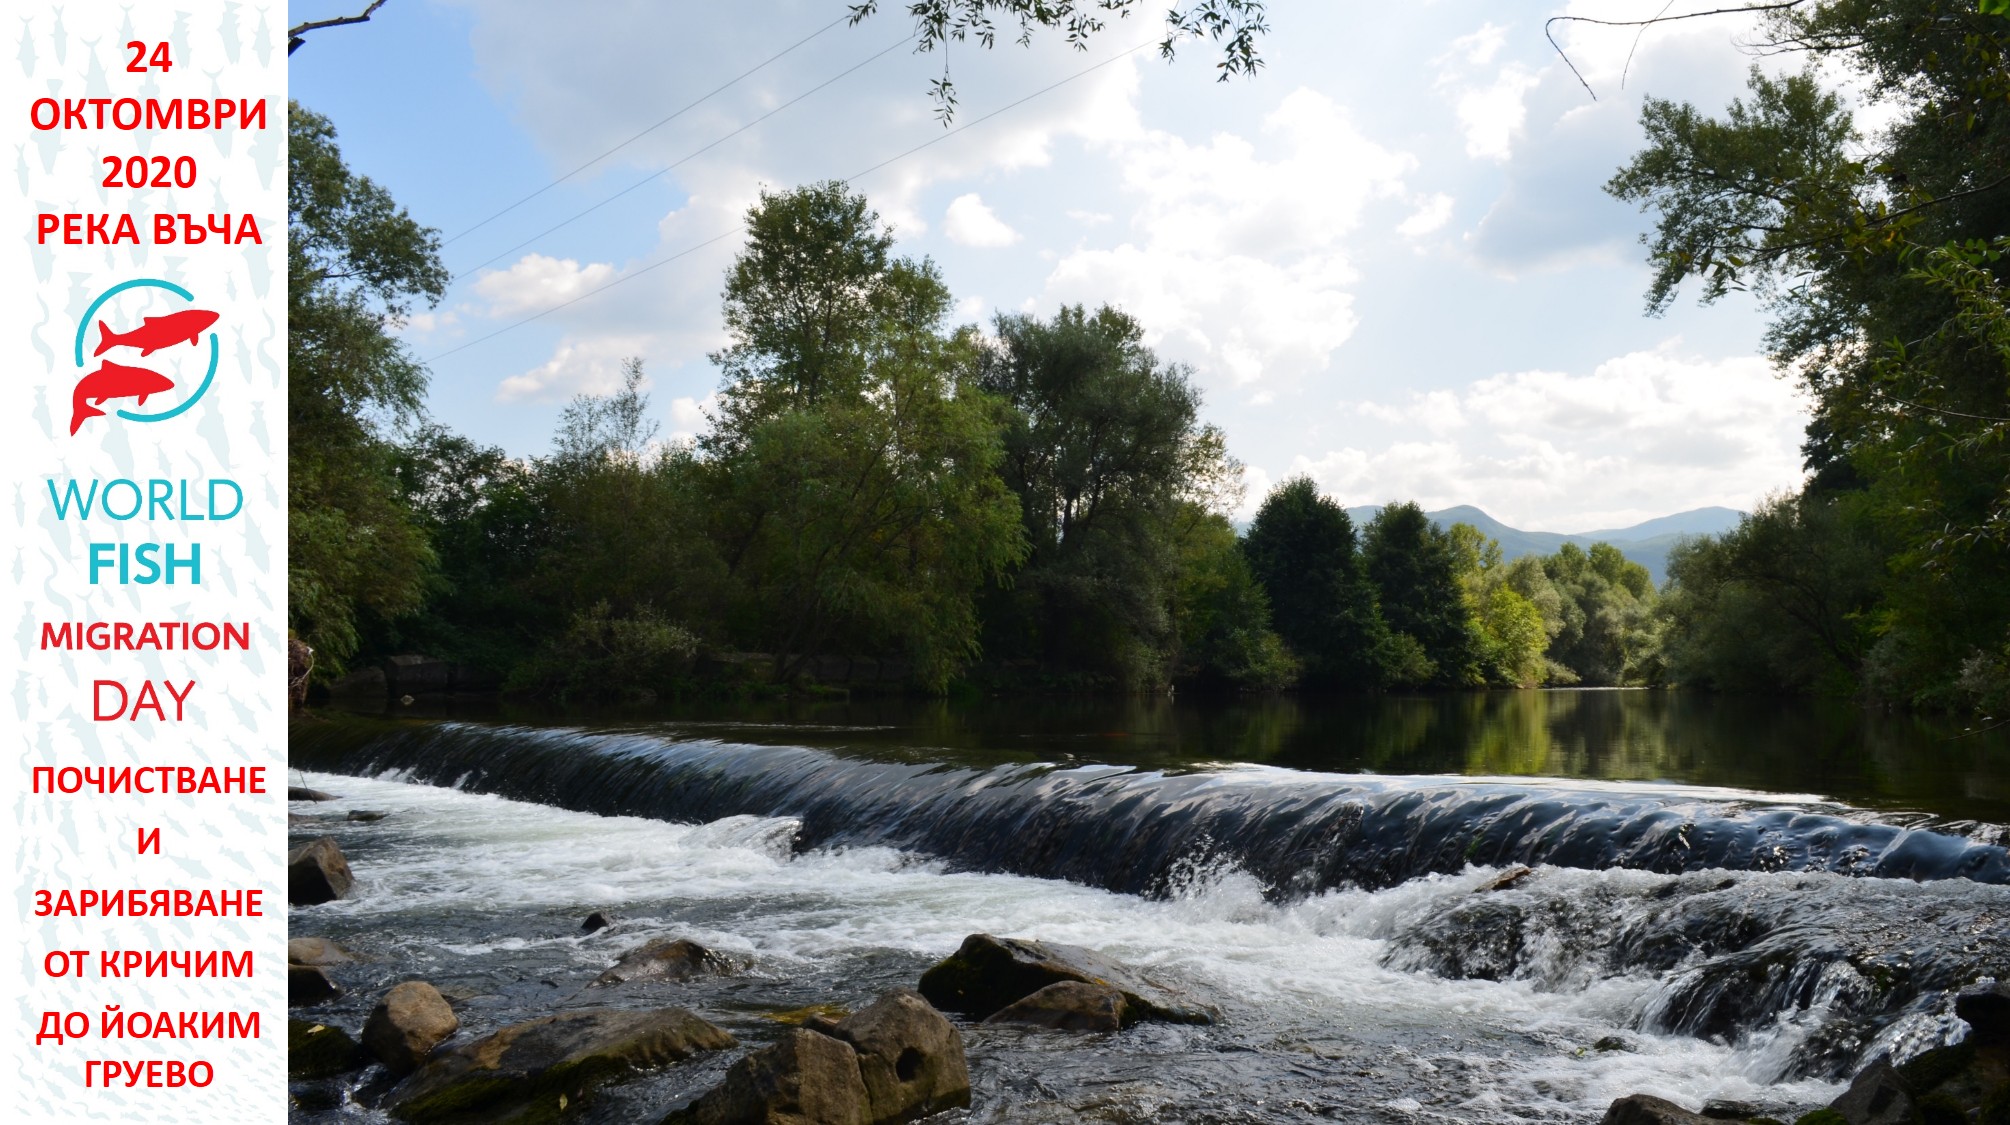 Организация  за екоакция: "Дай шанс на балканката" - река Въча 24.10.2020